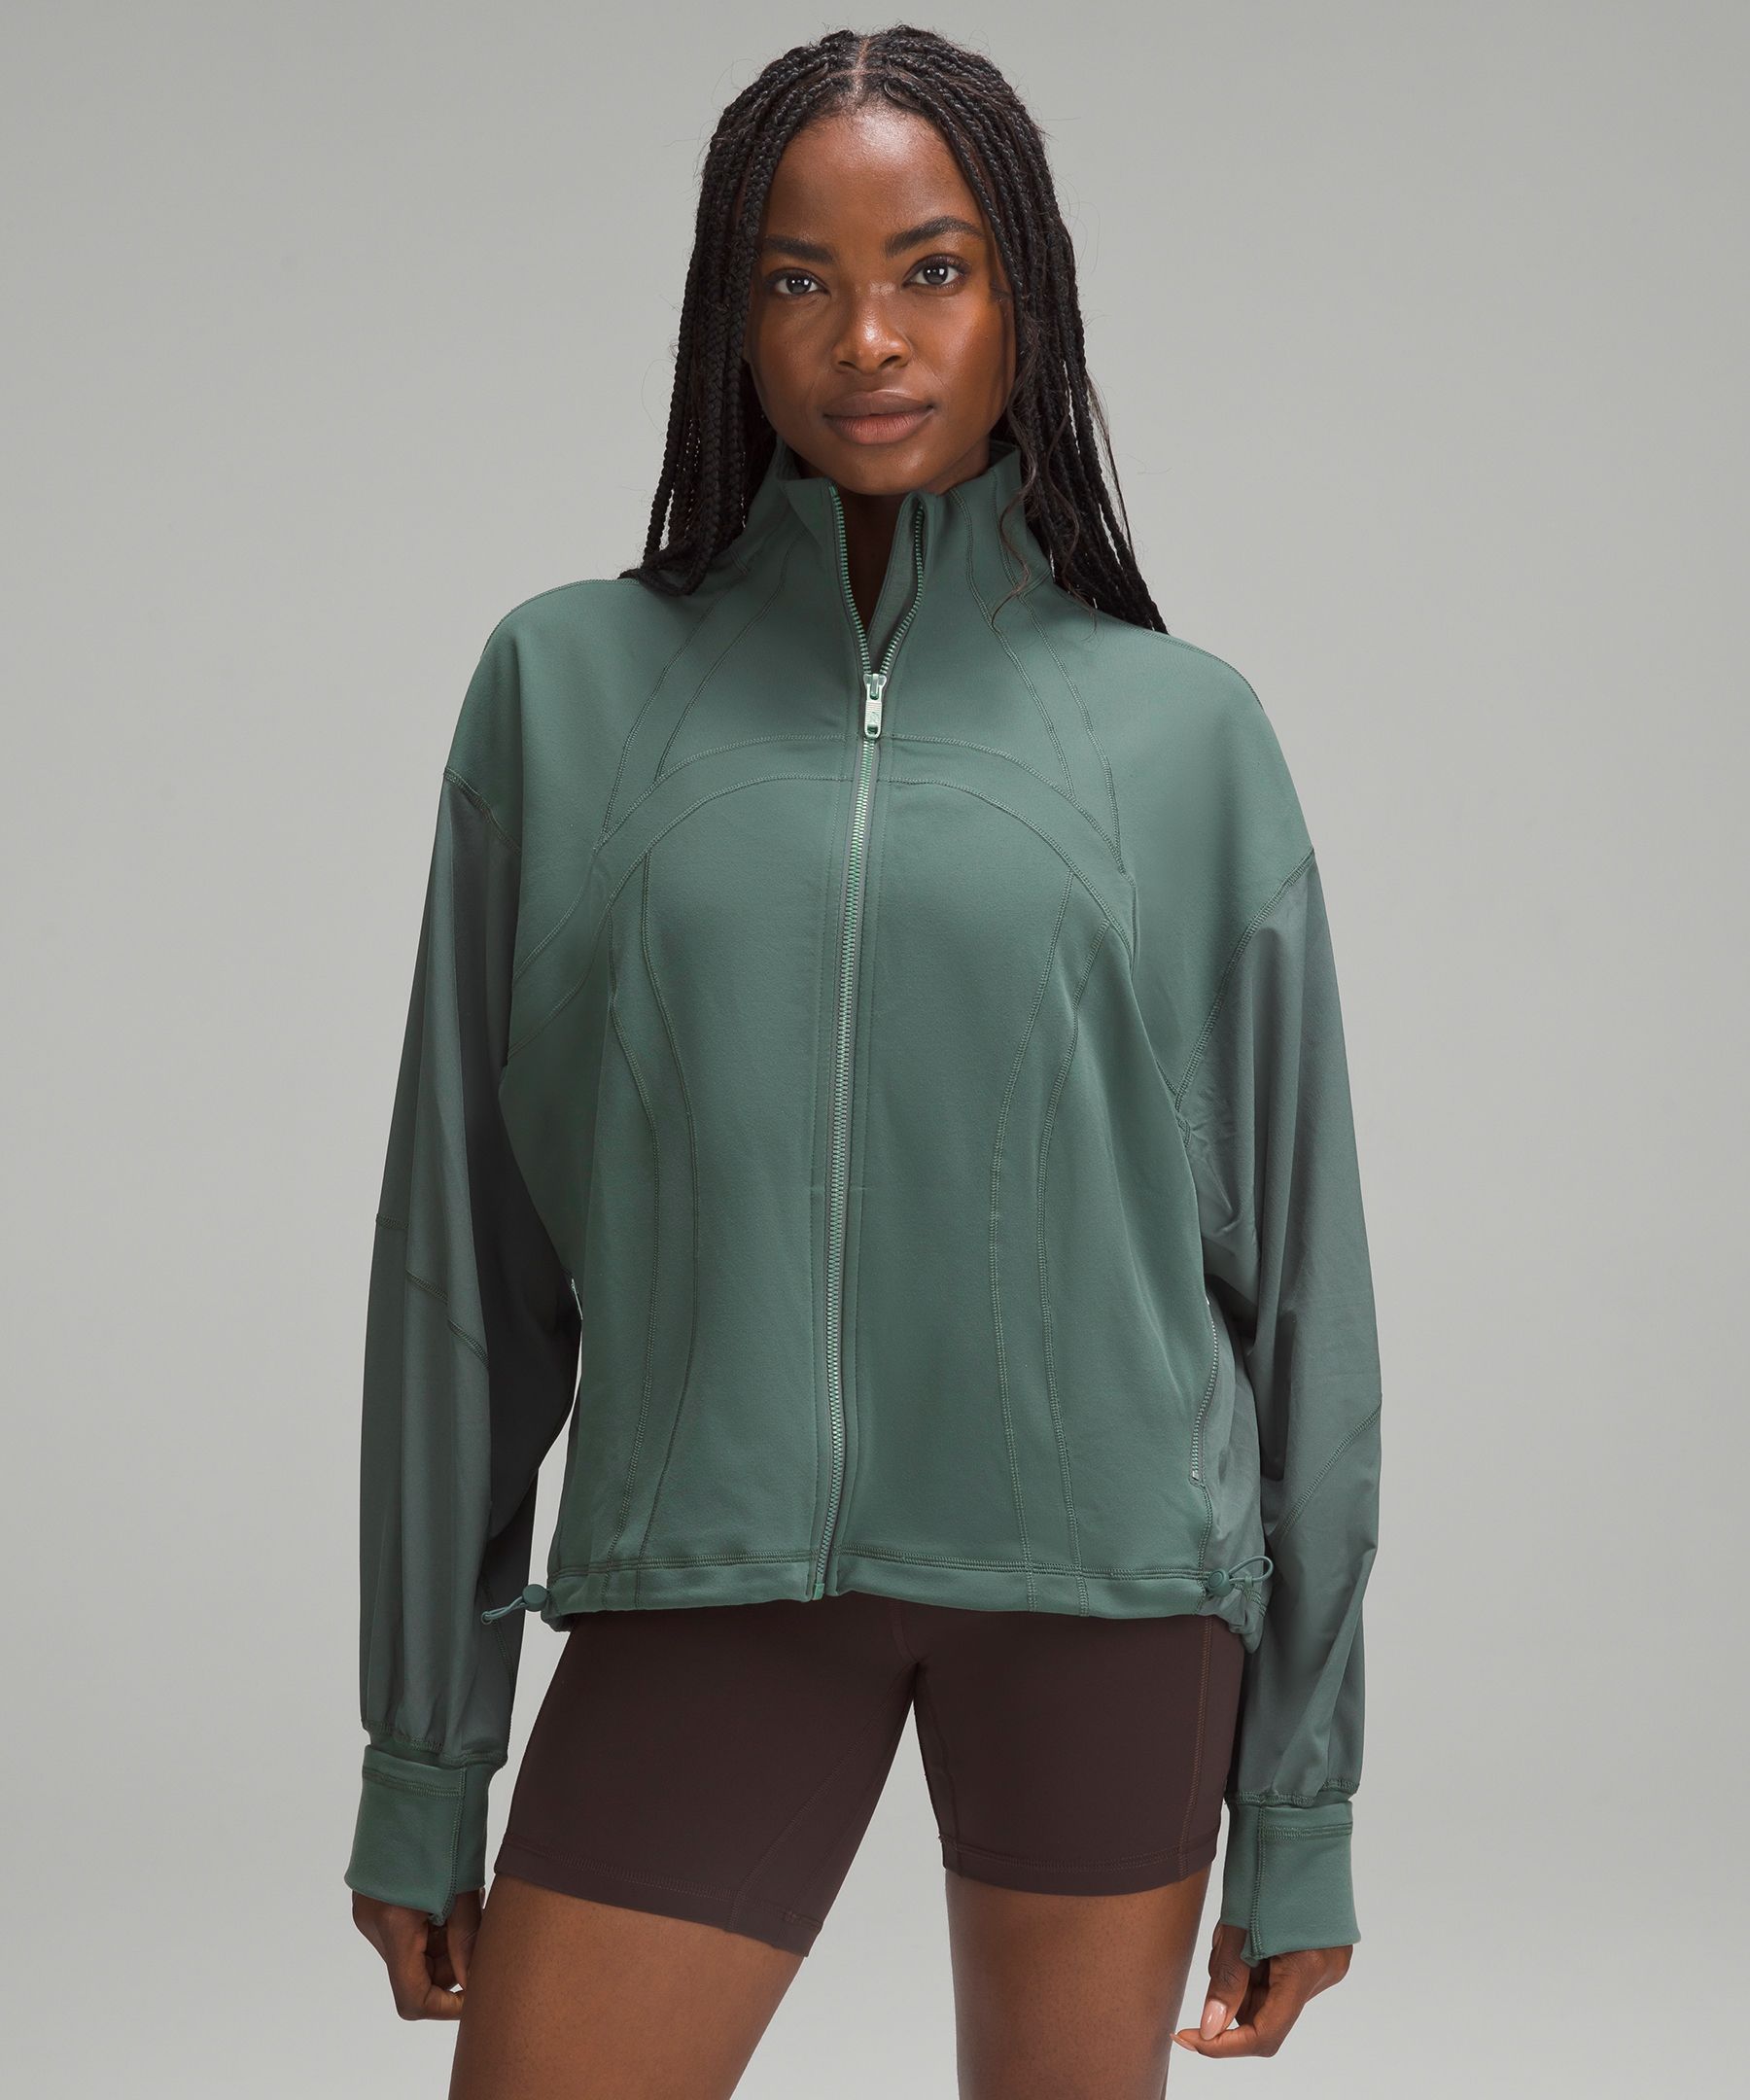 Define Relaxed-Fit Jacket *Luon  Women's Hoodies & Sweatshirts